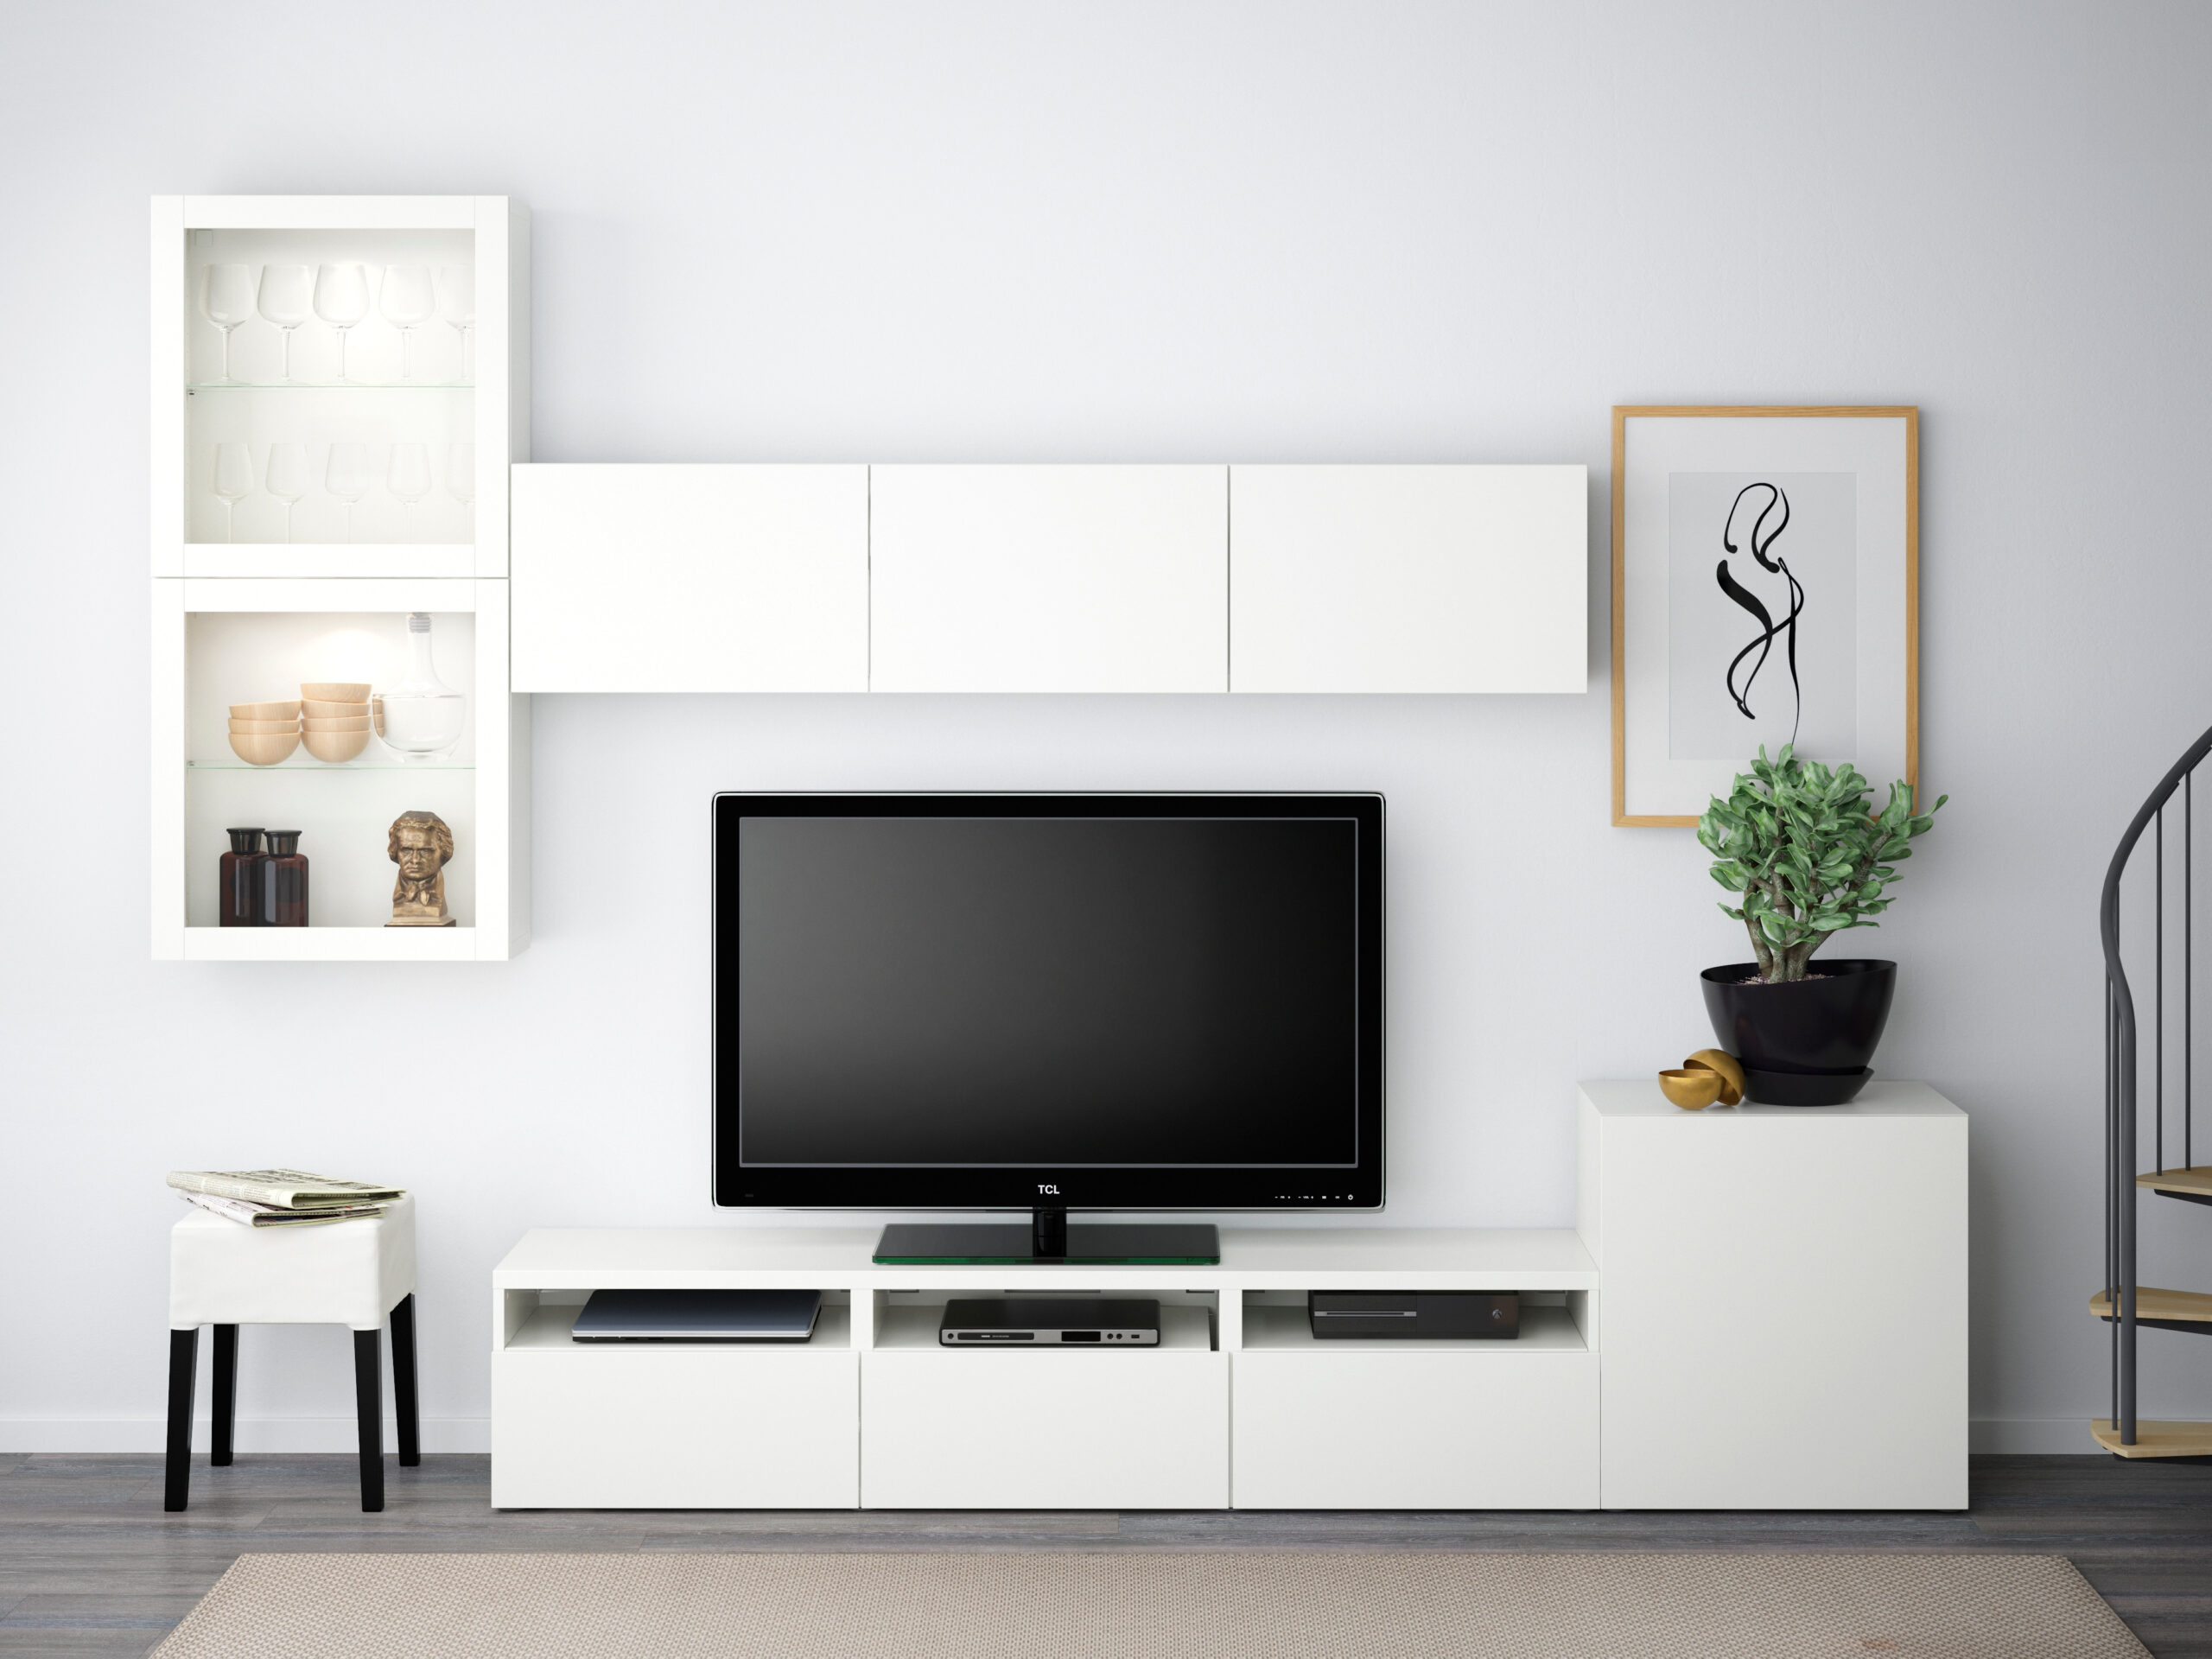 Dein Bestå Aufbewahrungs-Planer - Ikea intended for Ikea Hängeschrank Wohnzimmer